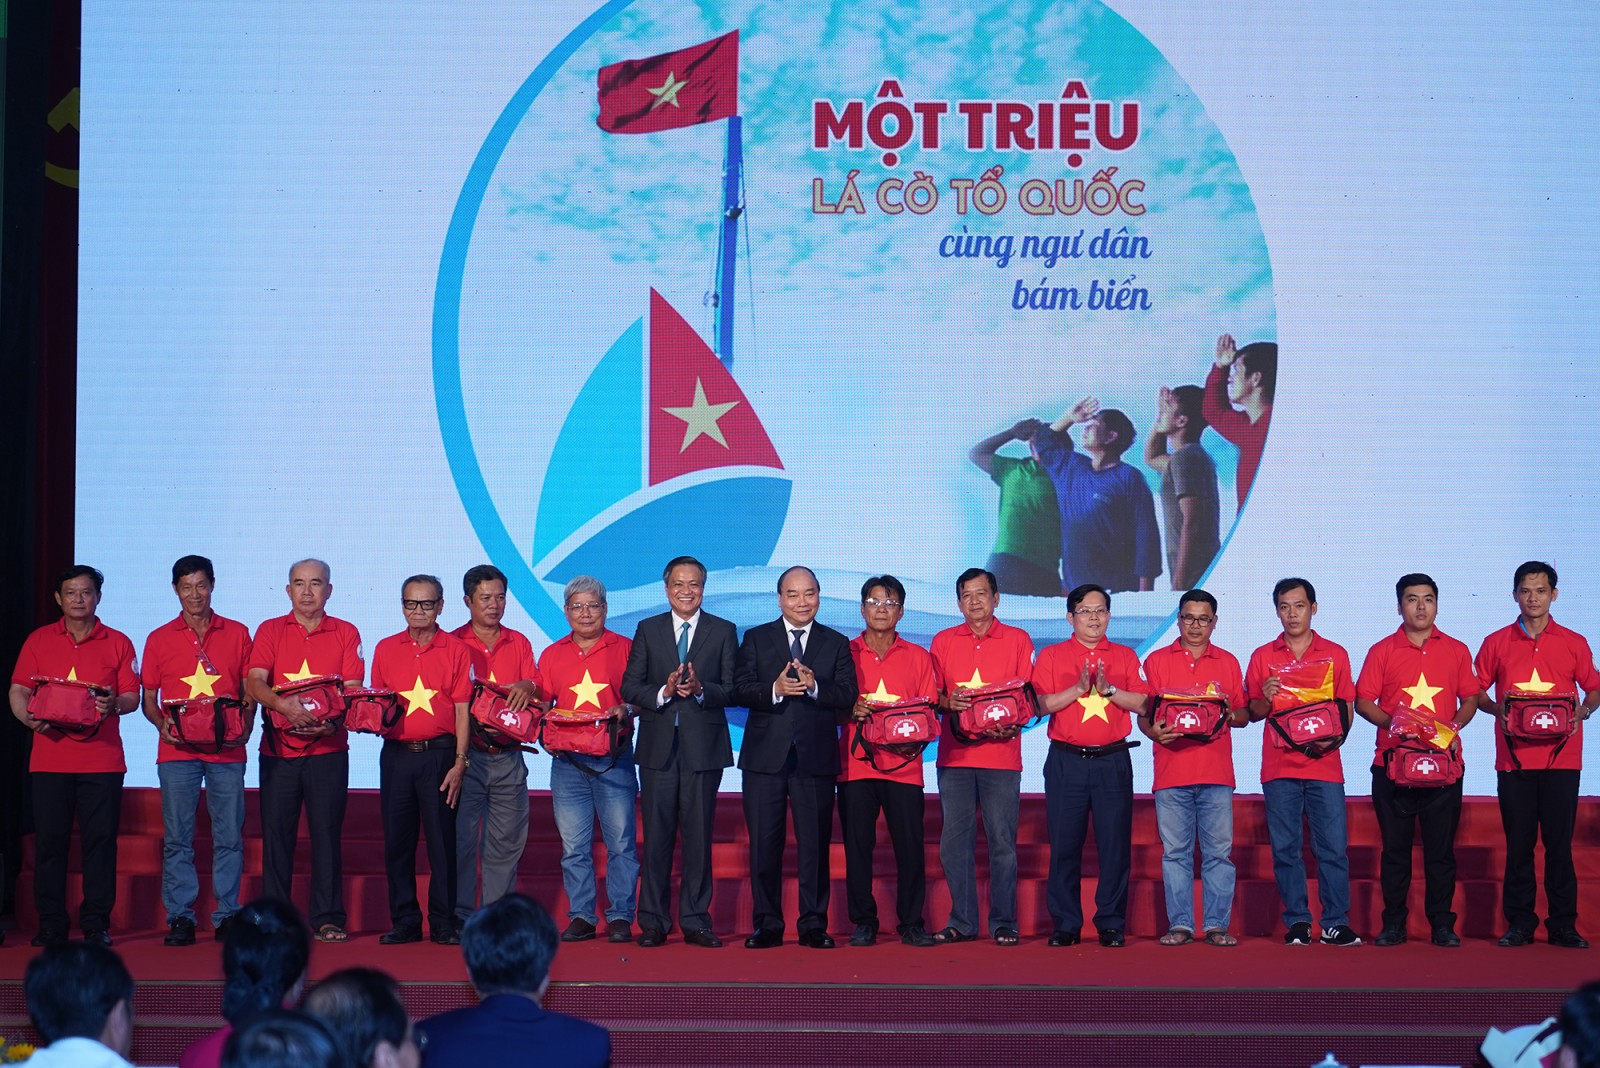 Thủ tướng trao cờ Tổ quốc và túi thiết bị y tế đi biển cho 12 ngư dân trong chương trình “Một triệu lá cờ Tổ quốc cùng ngư dân bám biển” - Ảnh: VGP/Quang Hiếu